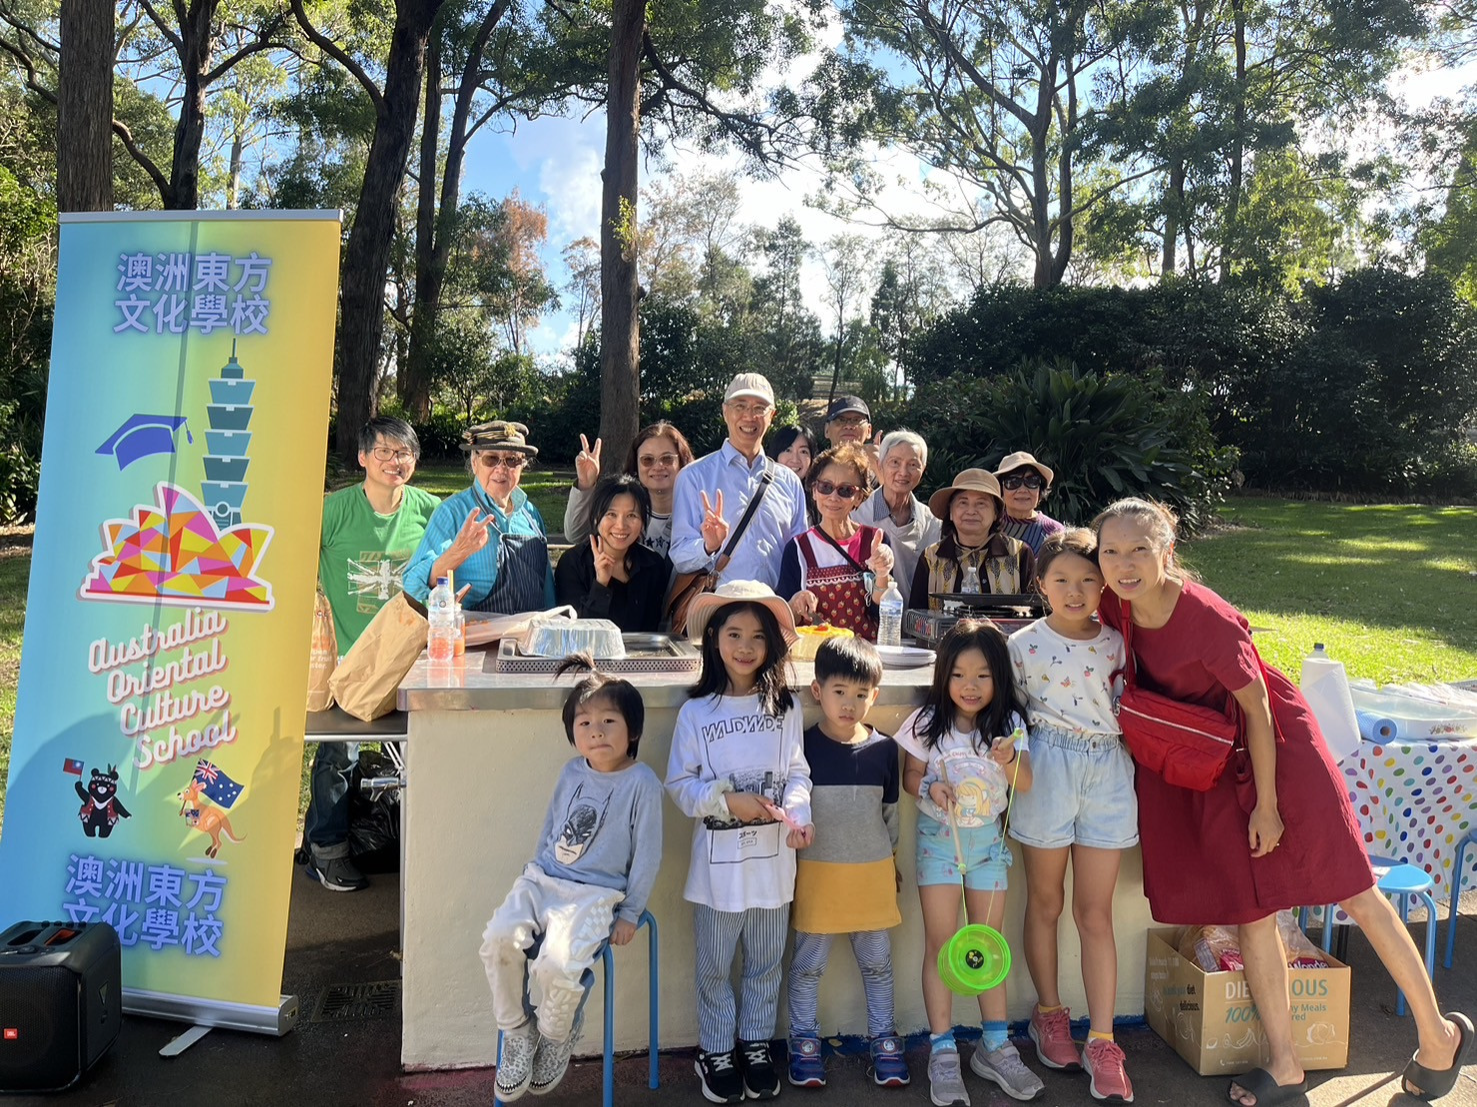 澳洲東方文化學校舉辦親子童樂文化活動 家長孩童共度愉快時光圖片